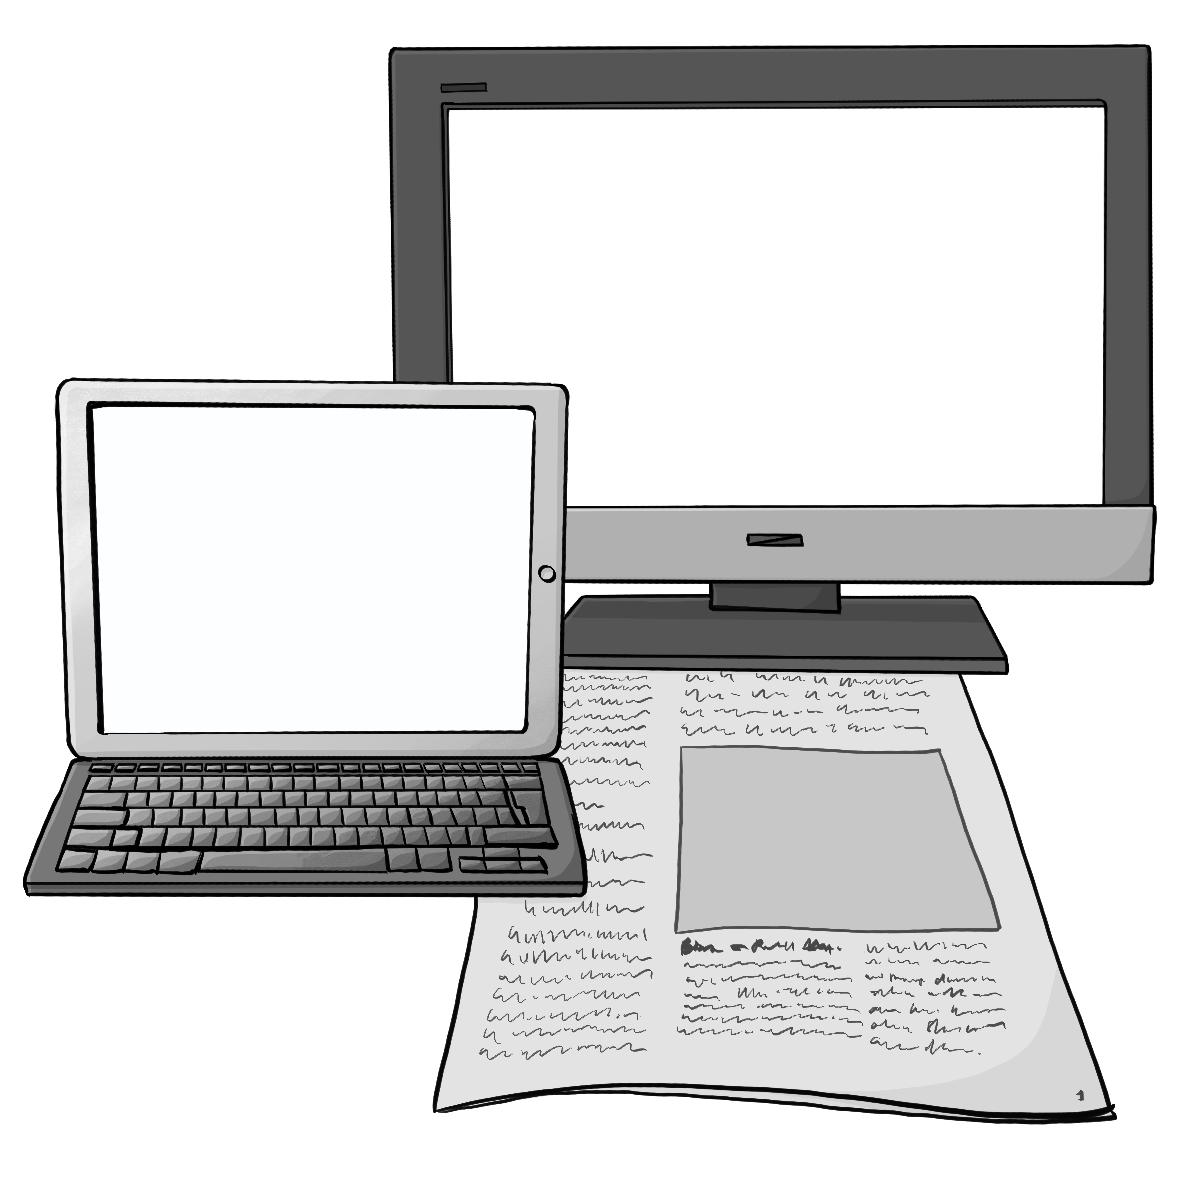 Ein leerer Fernsehbildschirm, ein Laptop mit leerem Bildschirm und eine Zeitung.